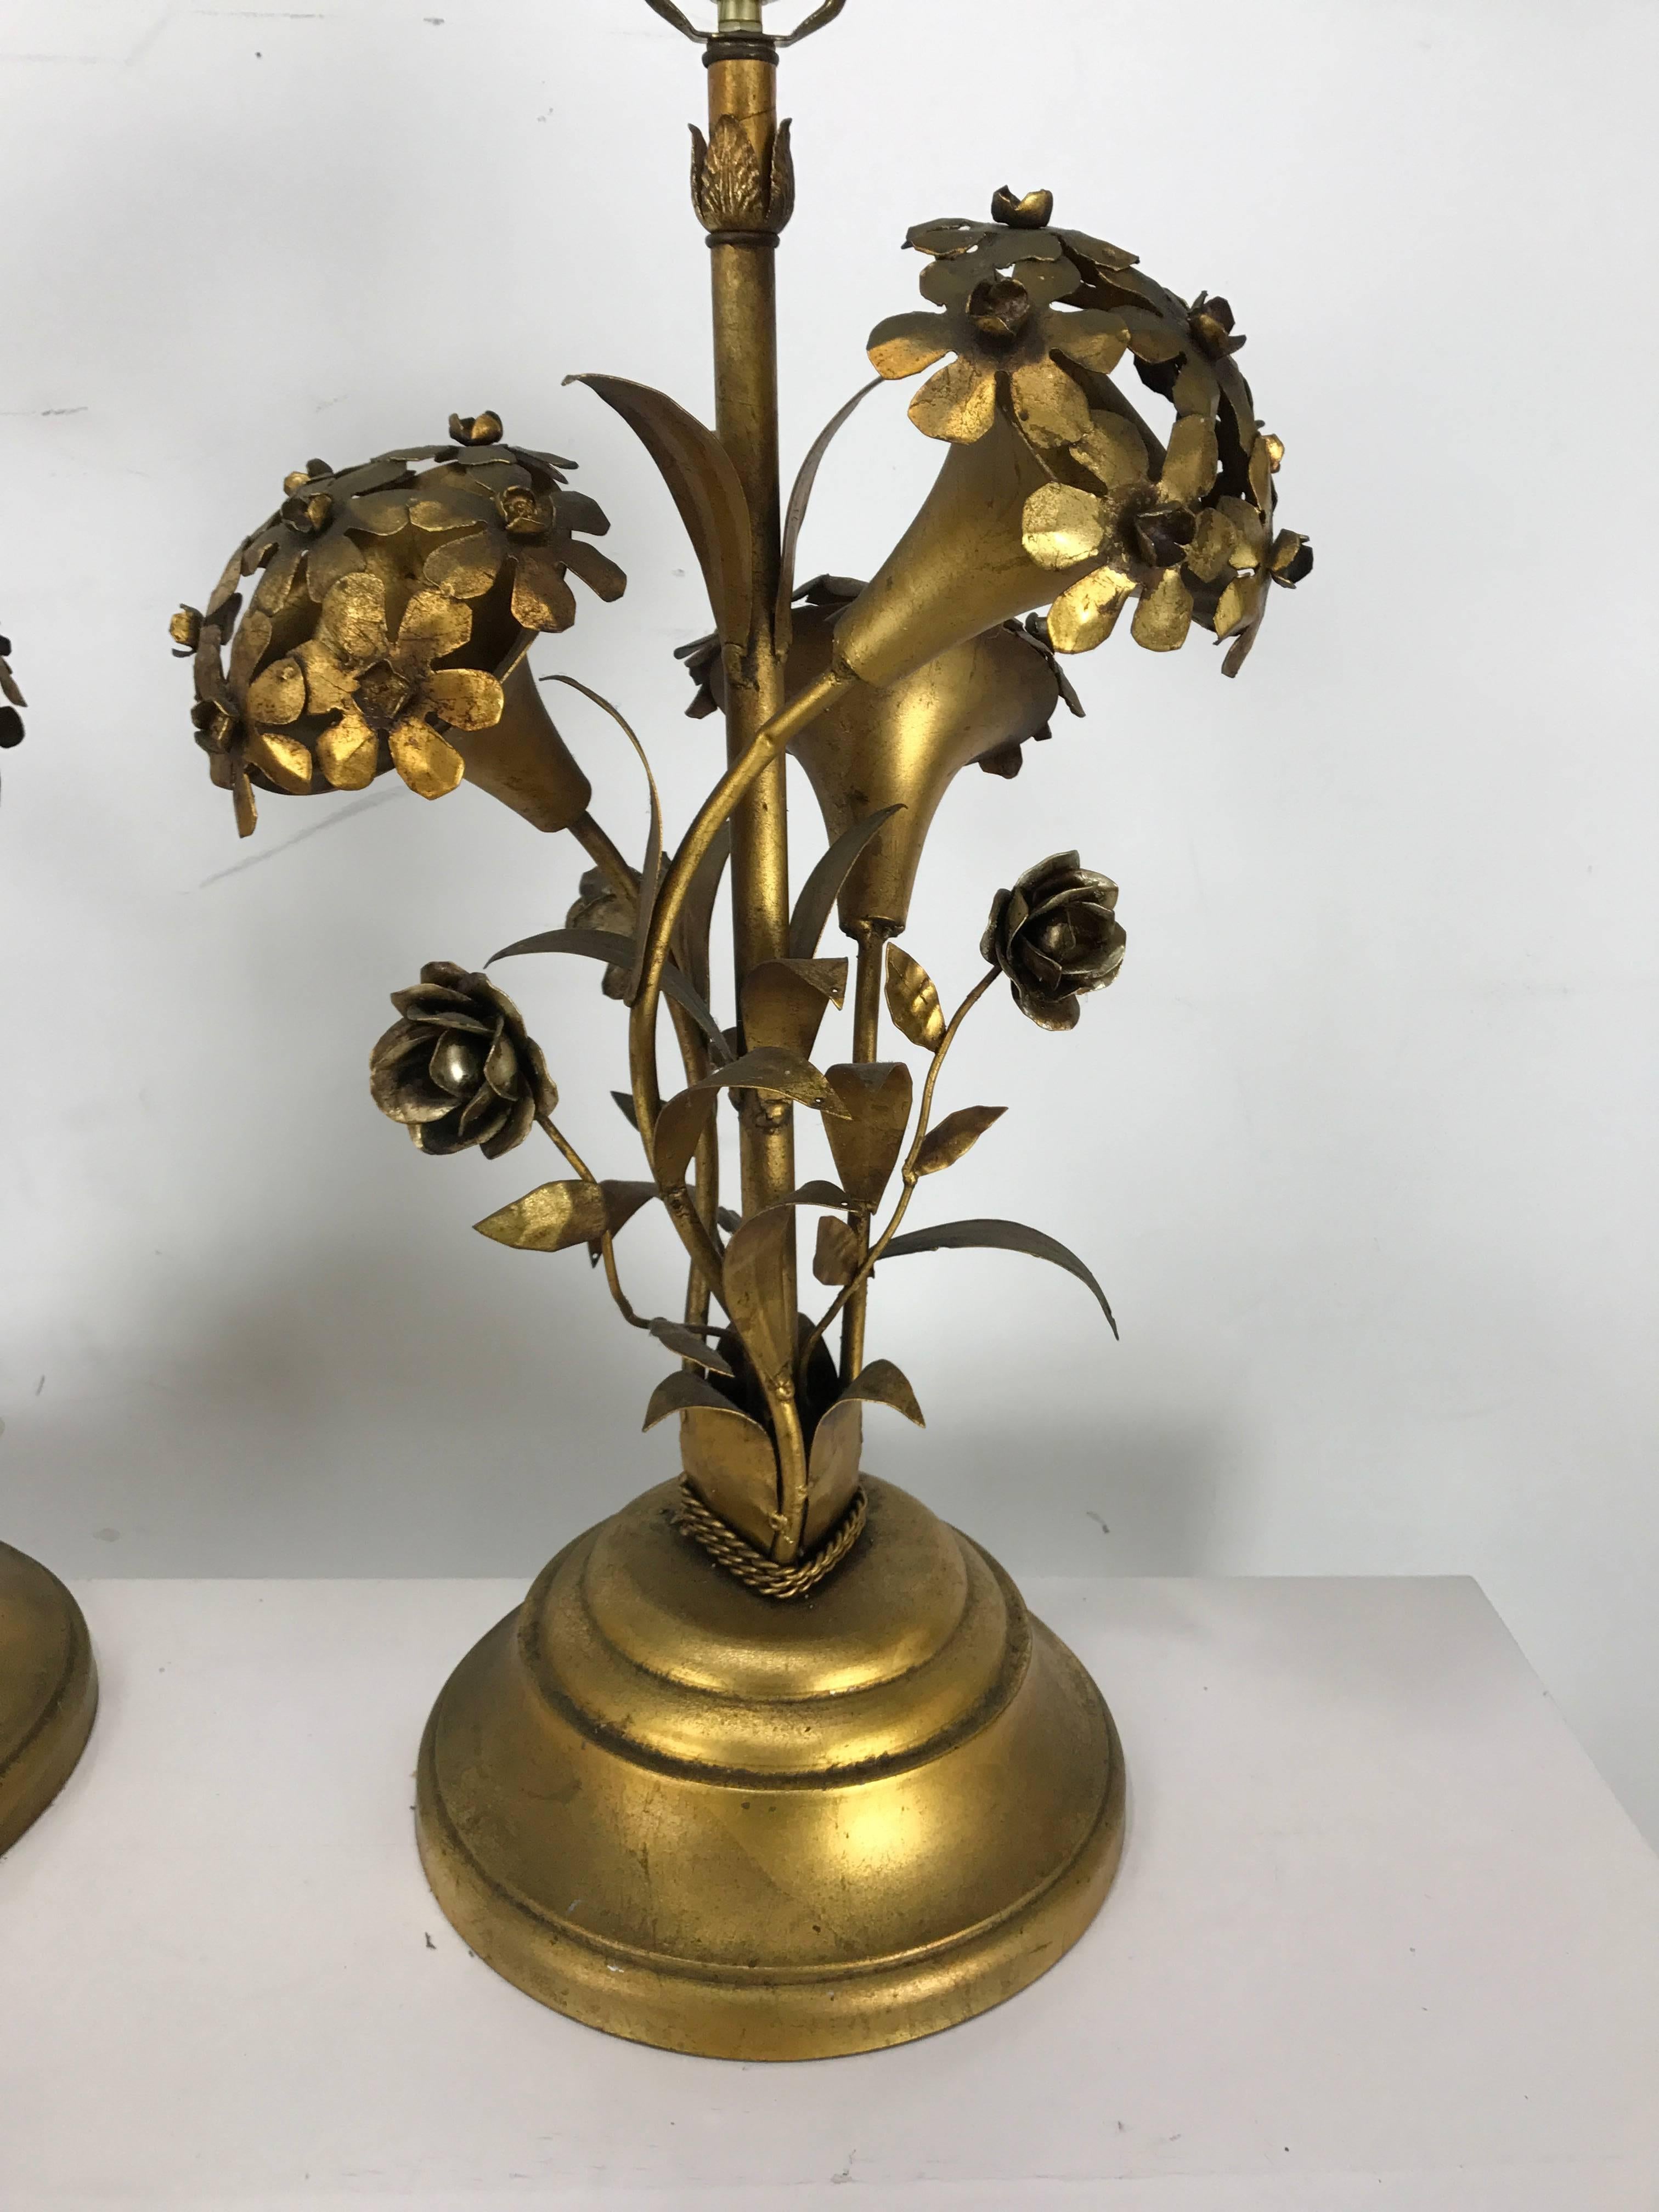 Paire de lampes de table de style Régence moderne, en or et doré, sur le thème des hortensias. Merveilleuse patine dorée, les hortensias stylisés conservent les douilles d'ampoules d'origine qui les éclairent.